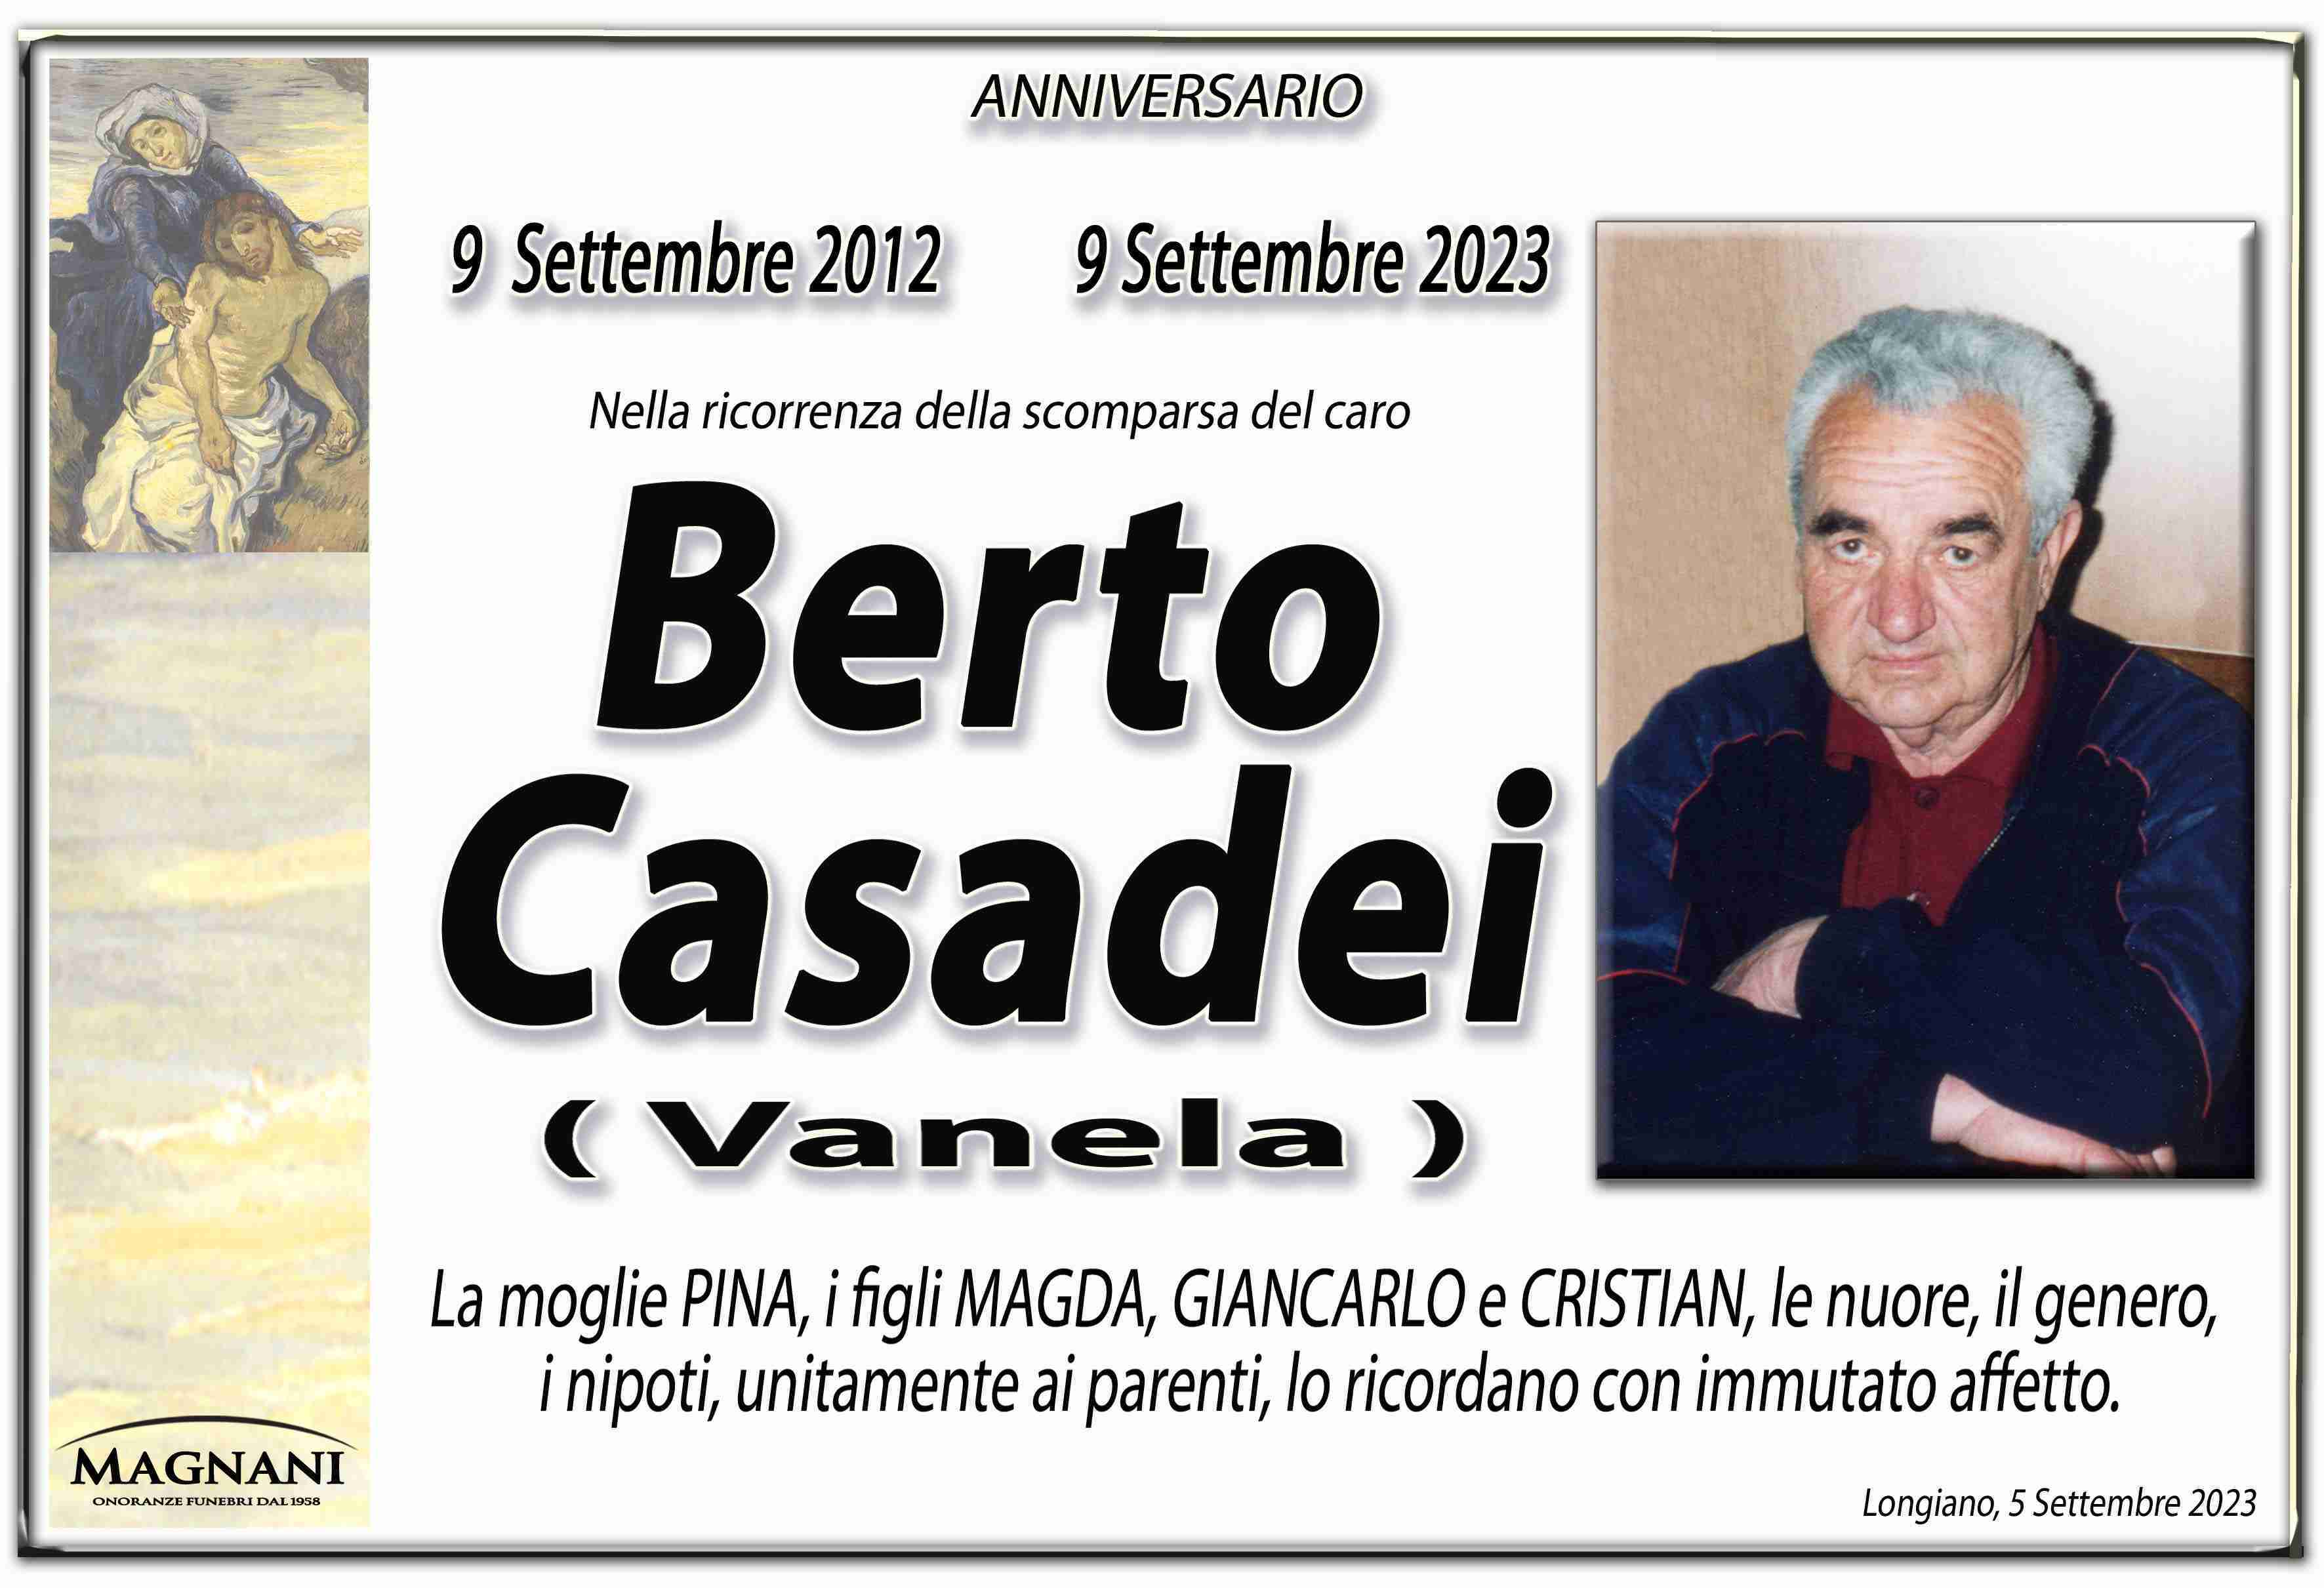 Berto Casadei